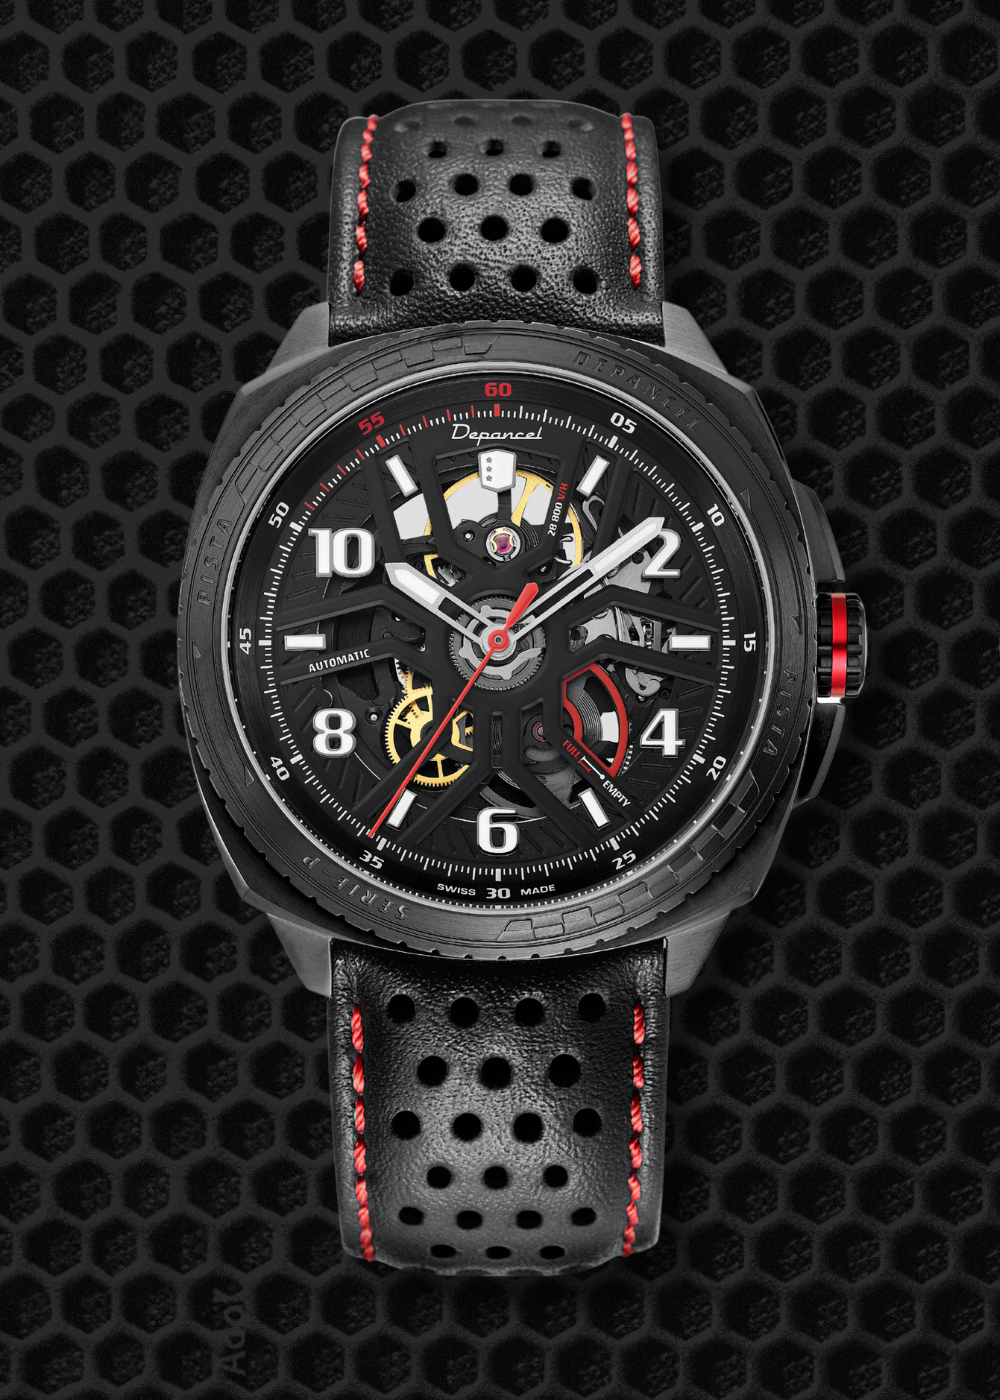 Montre suisse automatique squelette pista GT full black avec bracelet cuir noir rouge sur un fond technique